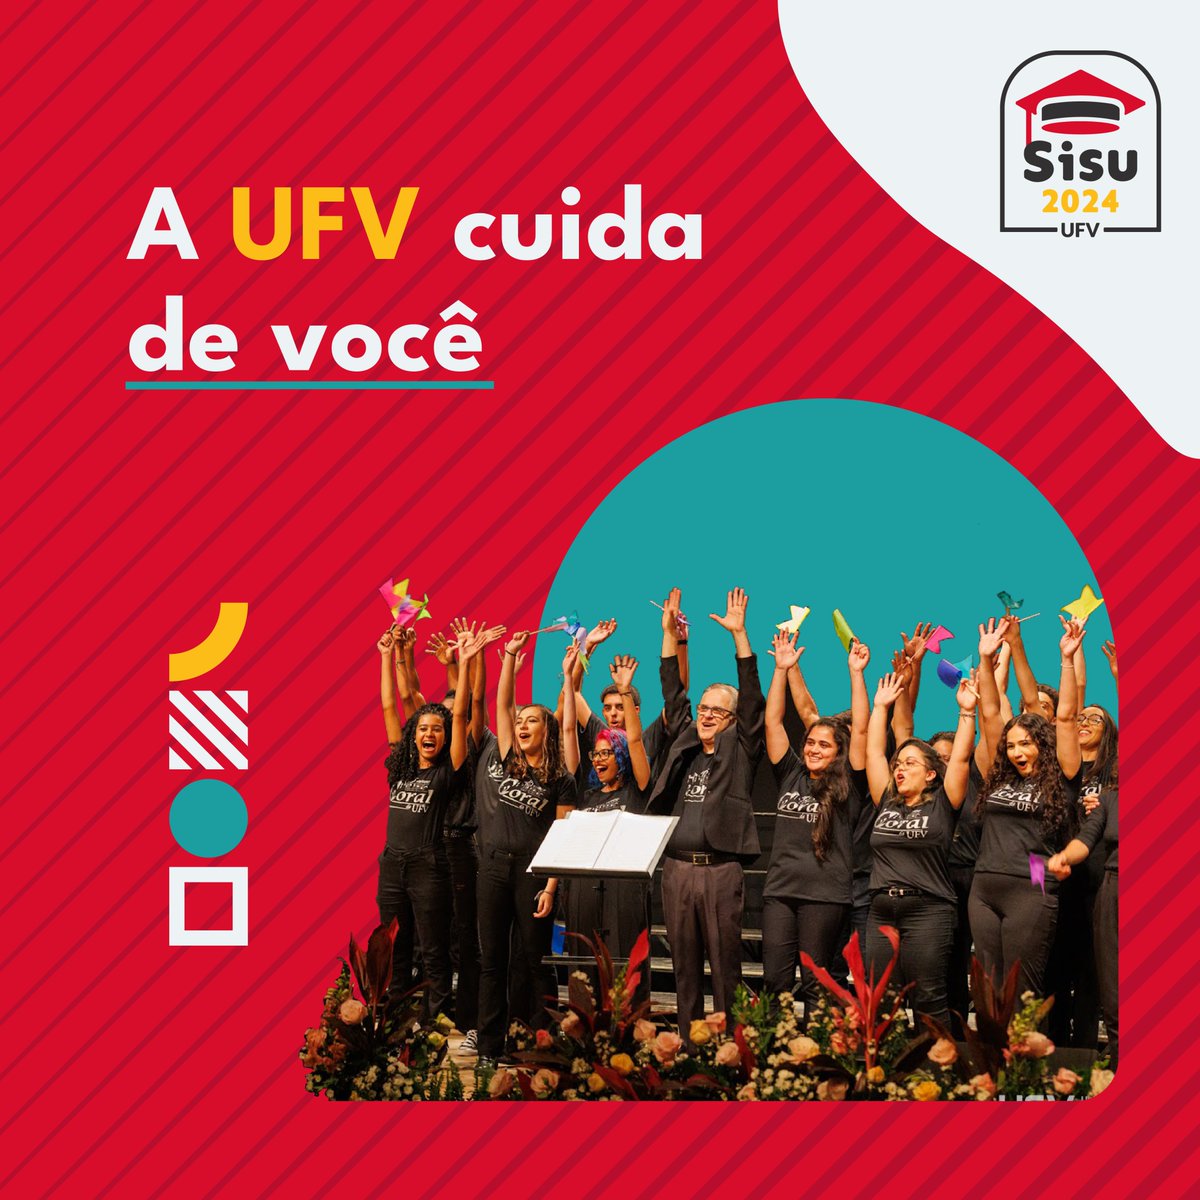 Sisu 2024: Esporte, cultura e lazer socializam e ajudam na saúde integral de estudantes da UFV: www2.dti.ufv.br/noticias/scrip…